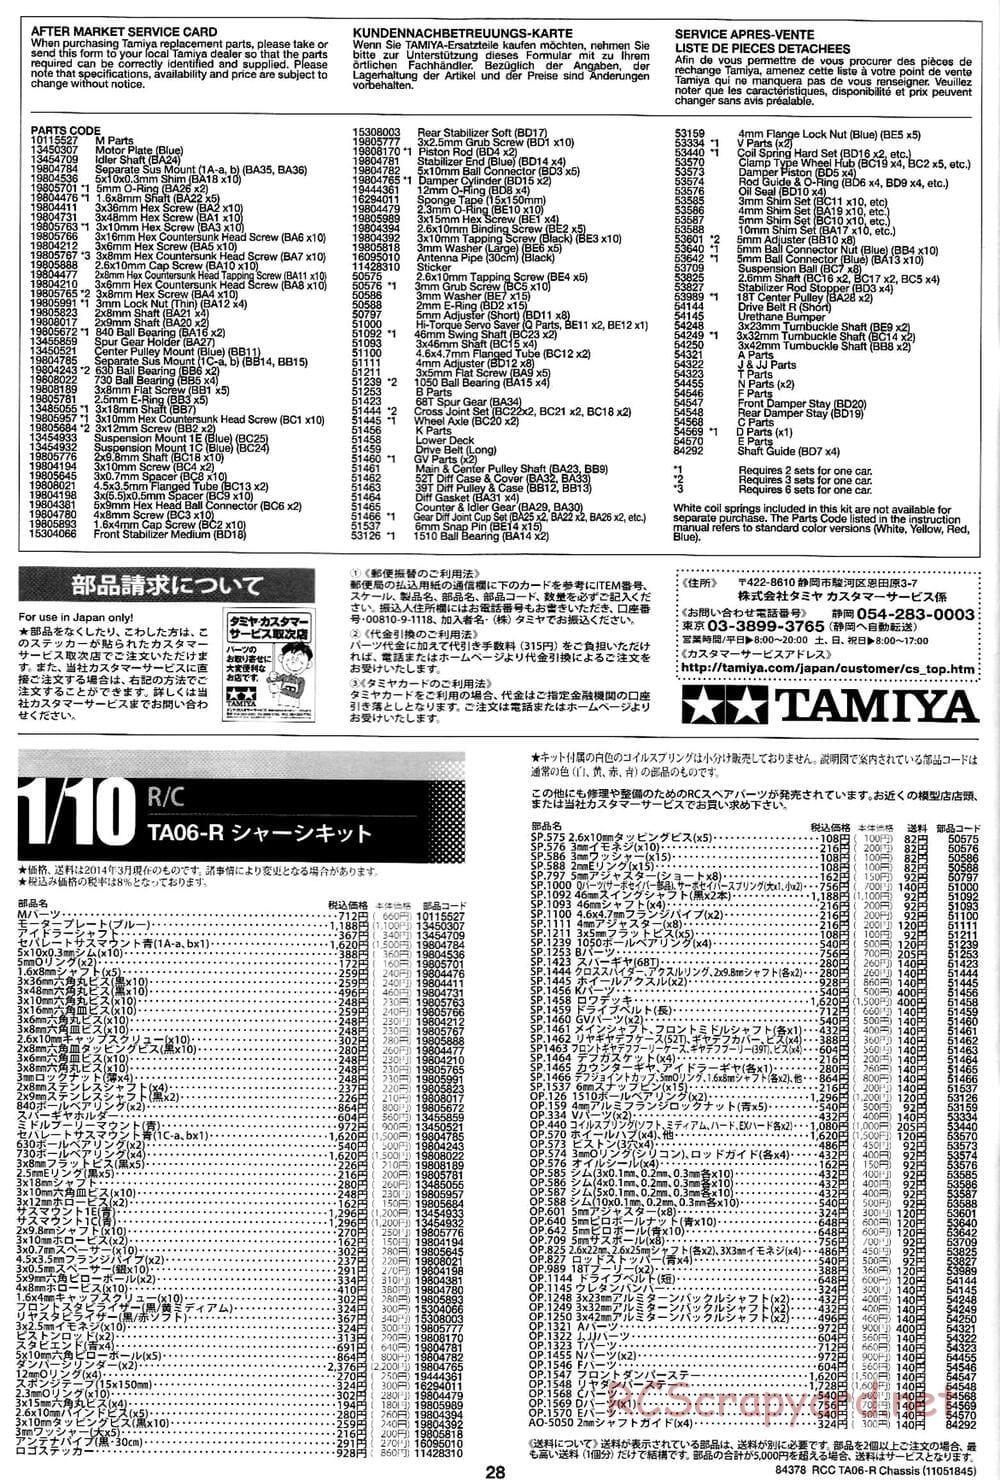 Tamiya - TA06-R Chassis - Manual - Page 28